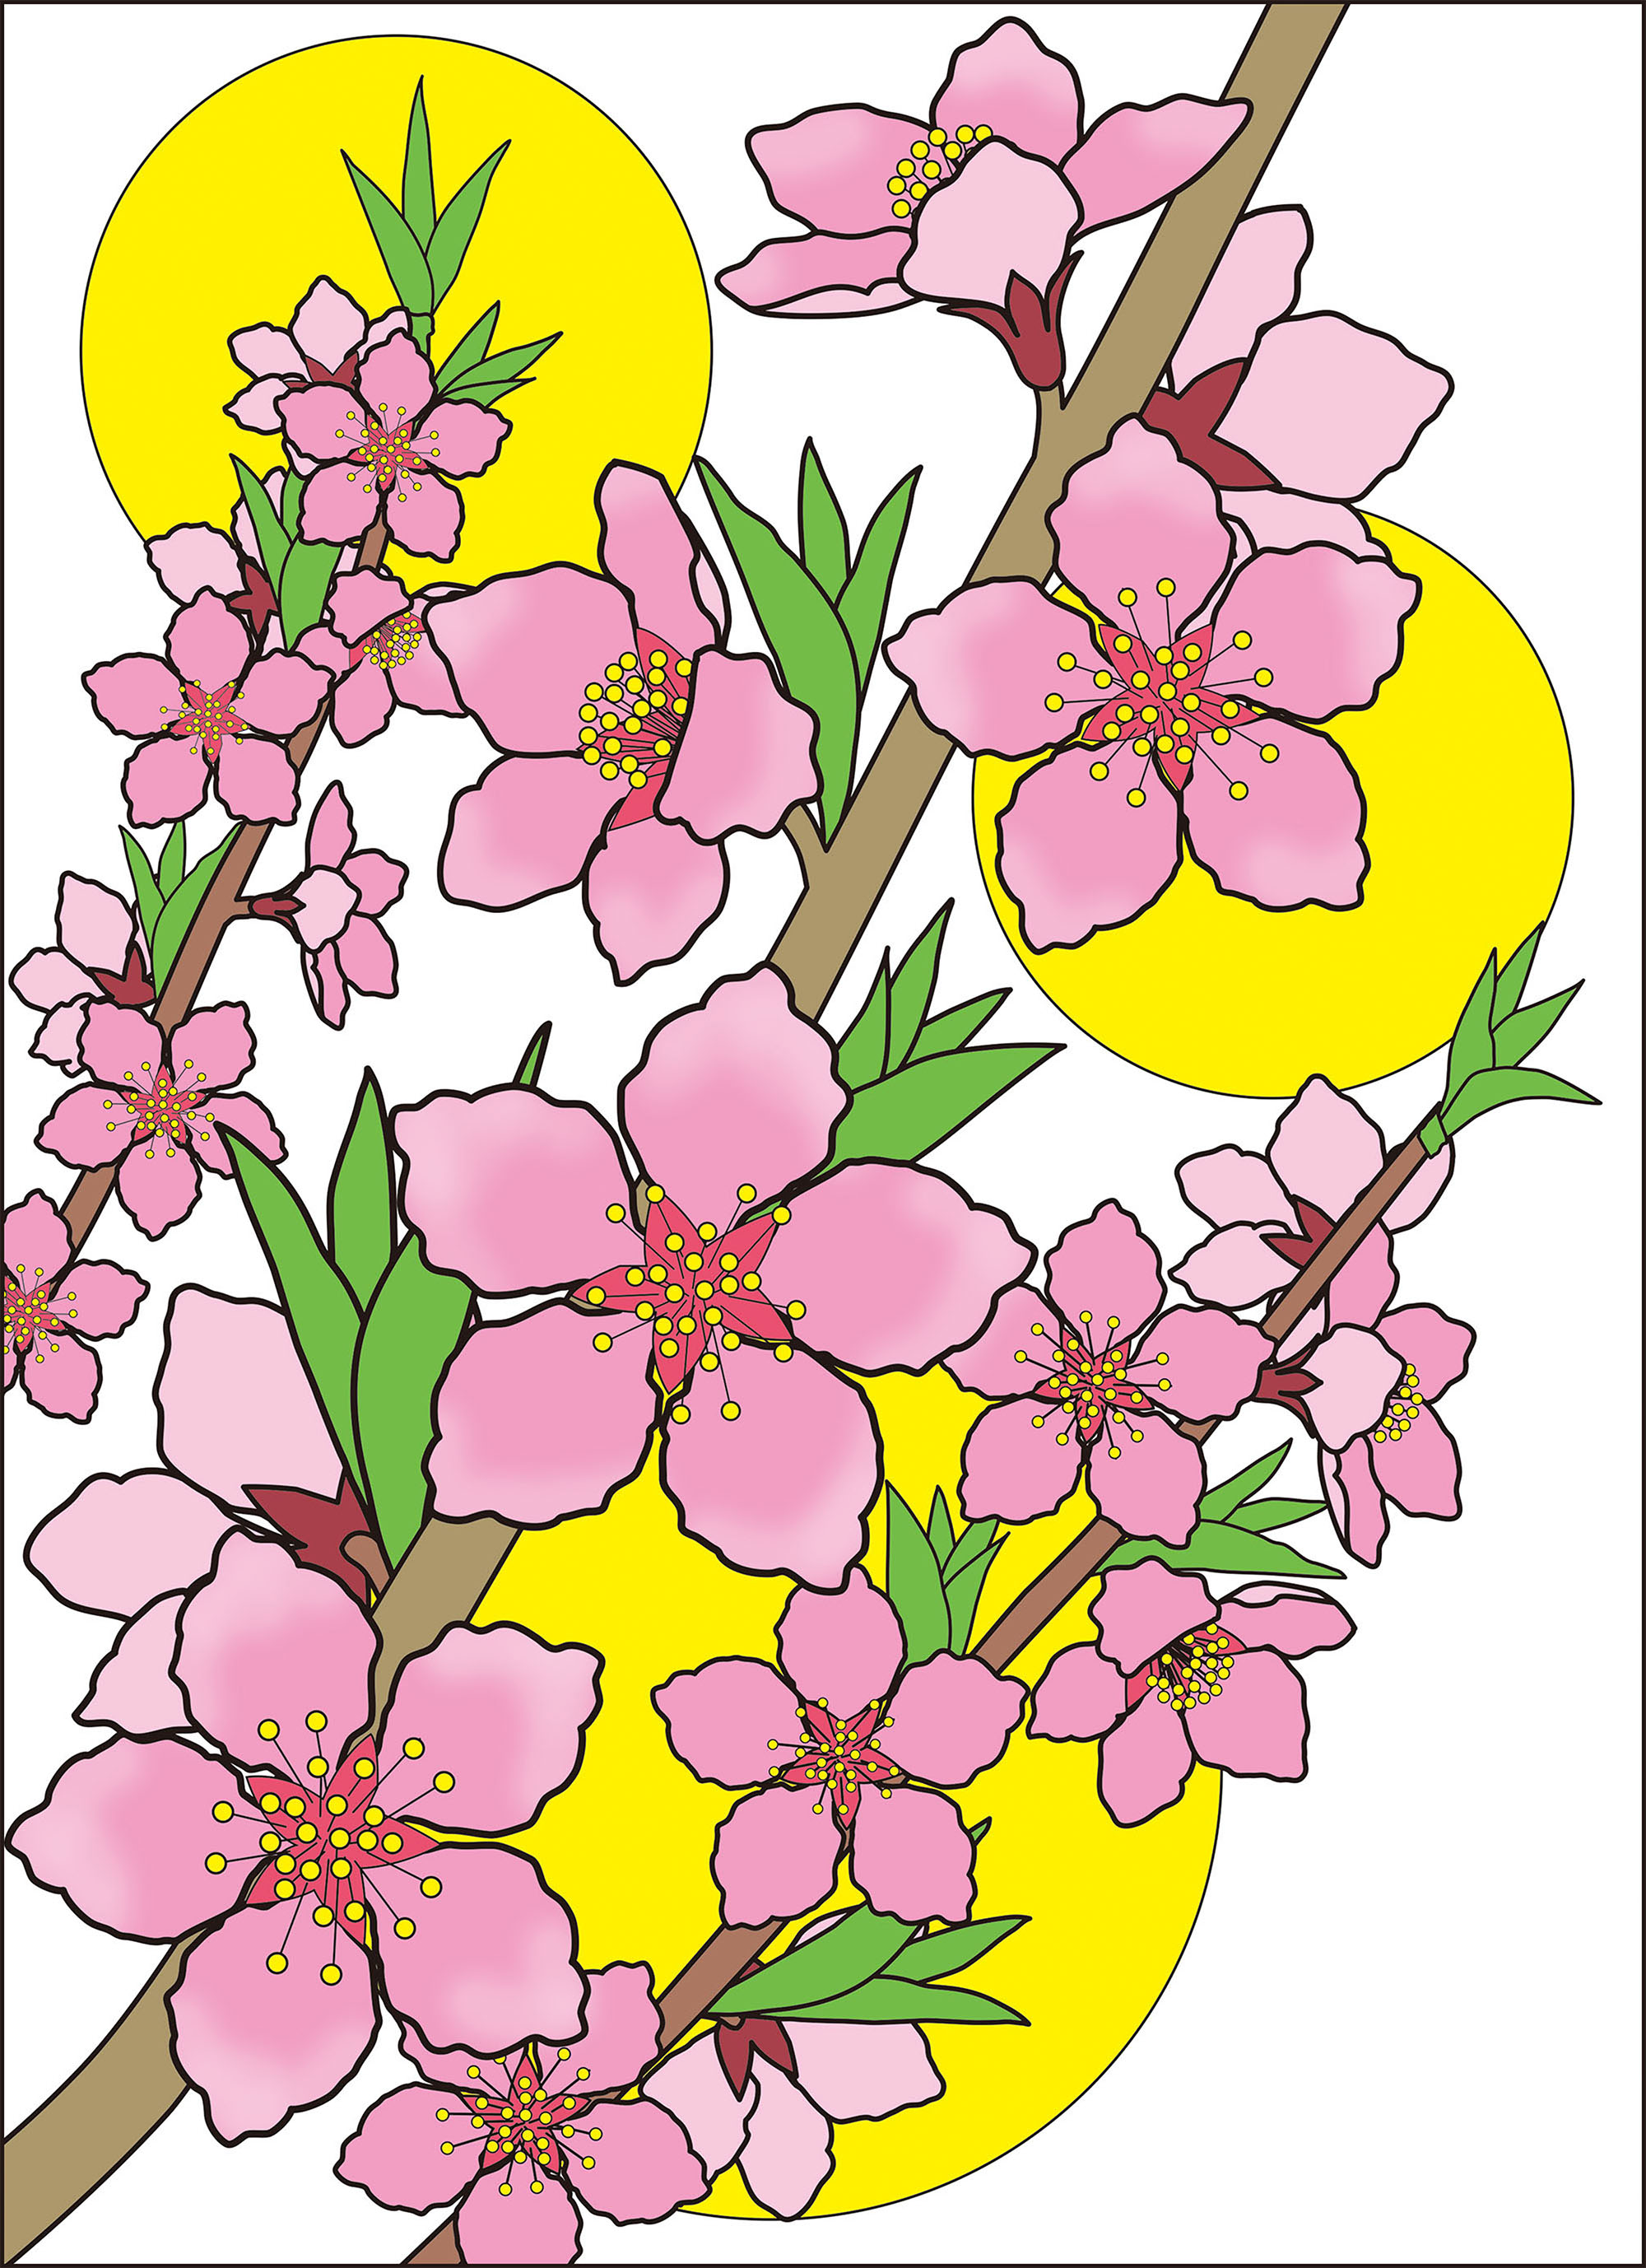 レク素材 桃の花 介護レク広場 レク素材やレクネタ 企画書 の無料ダウンロード